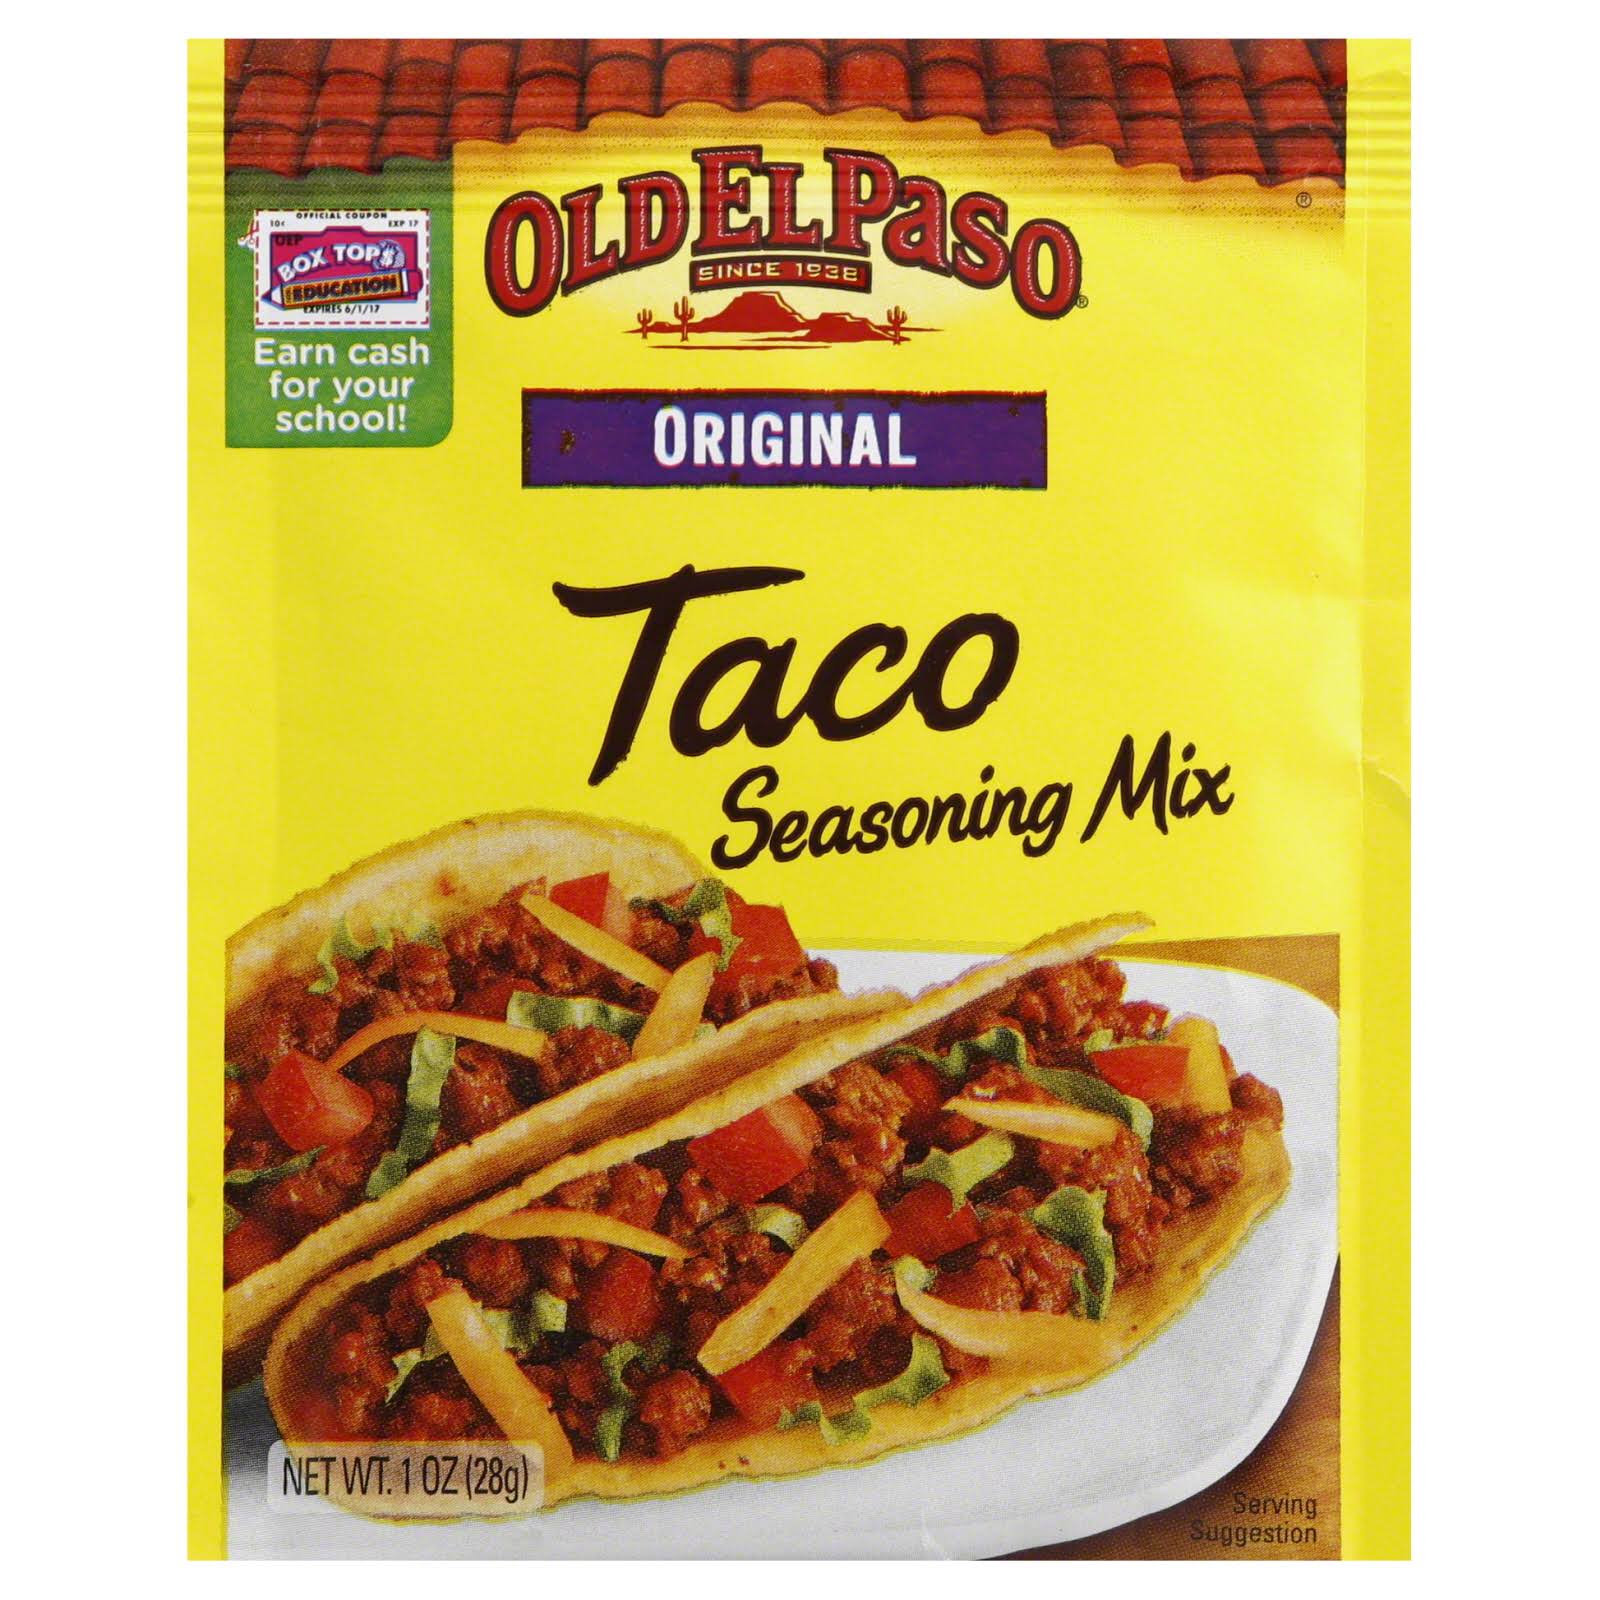 Old El Paso Taco Seasoning Mix - Original, 1oz